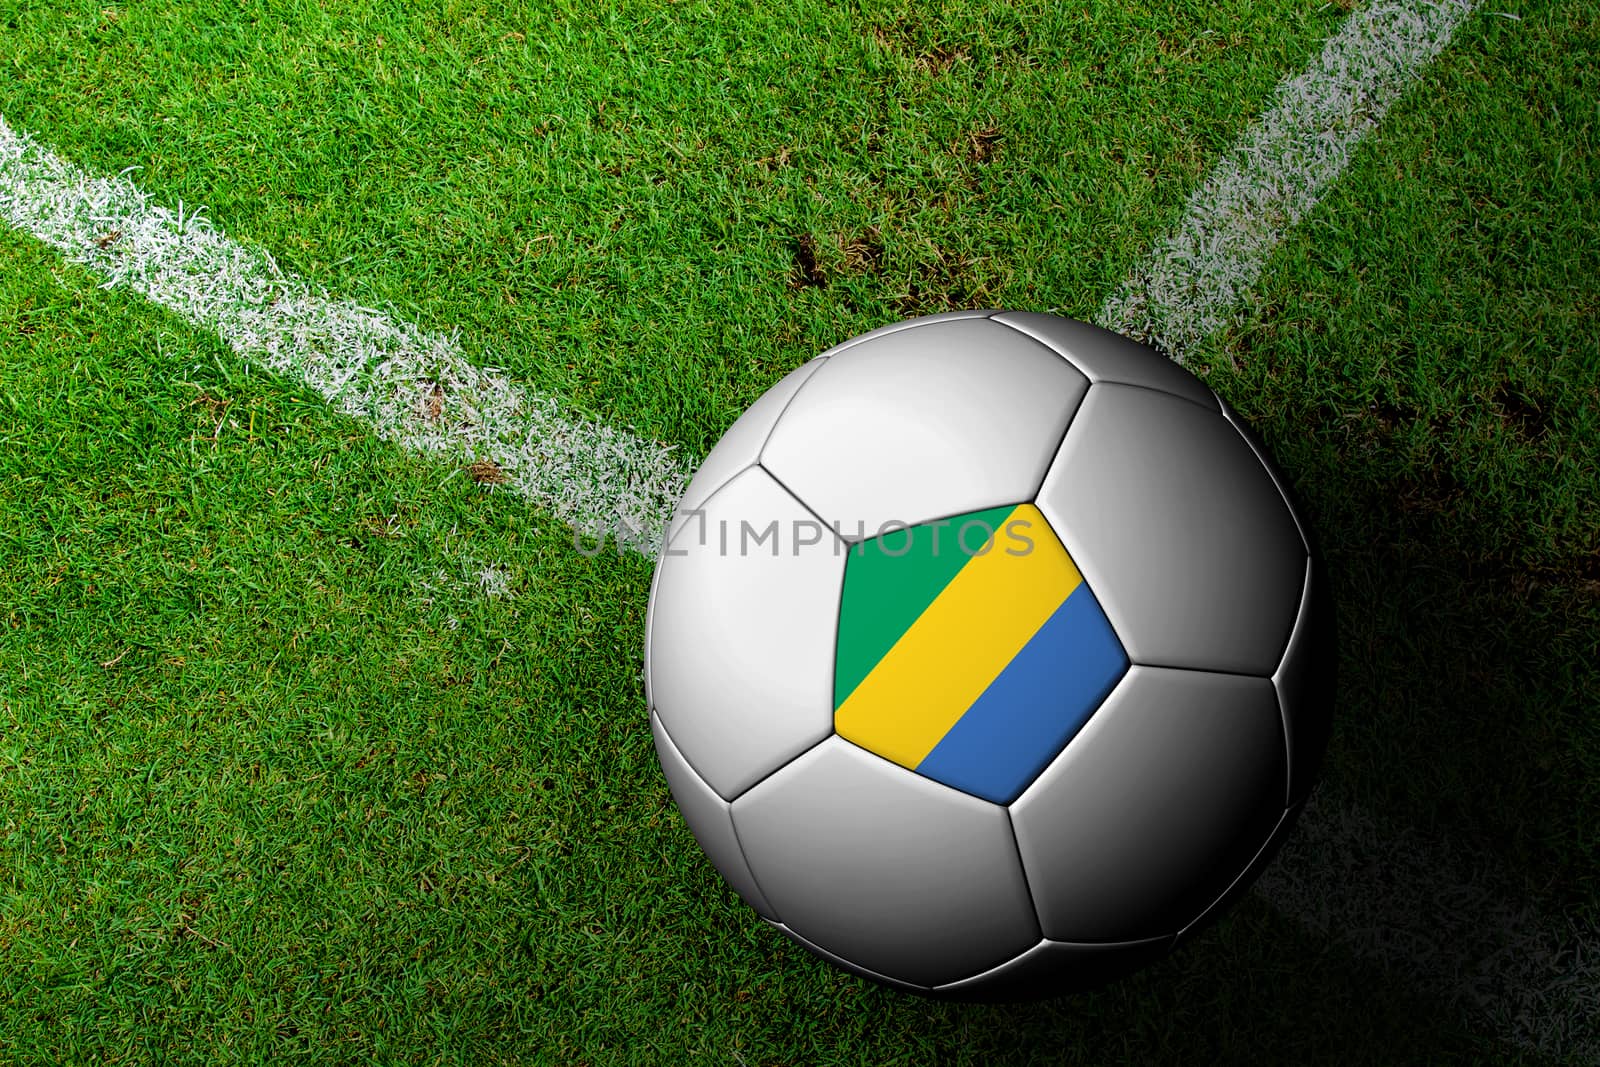 Gabon Flag Pattern of a soccer ball in green grass